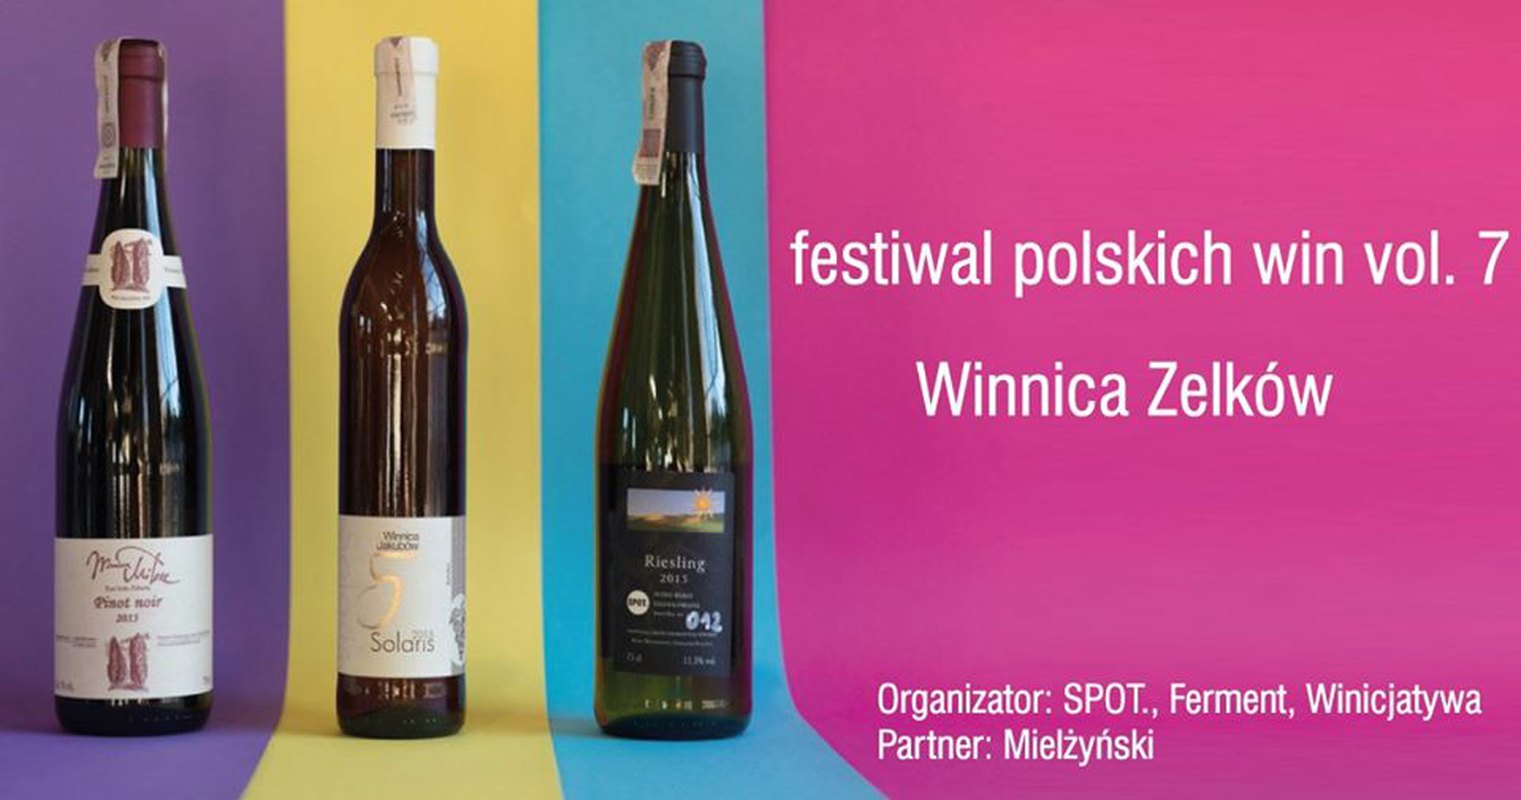 Polskie wino 7 / 2020 I Mielżyński I Winnica Zelków